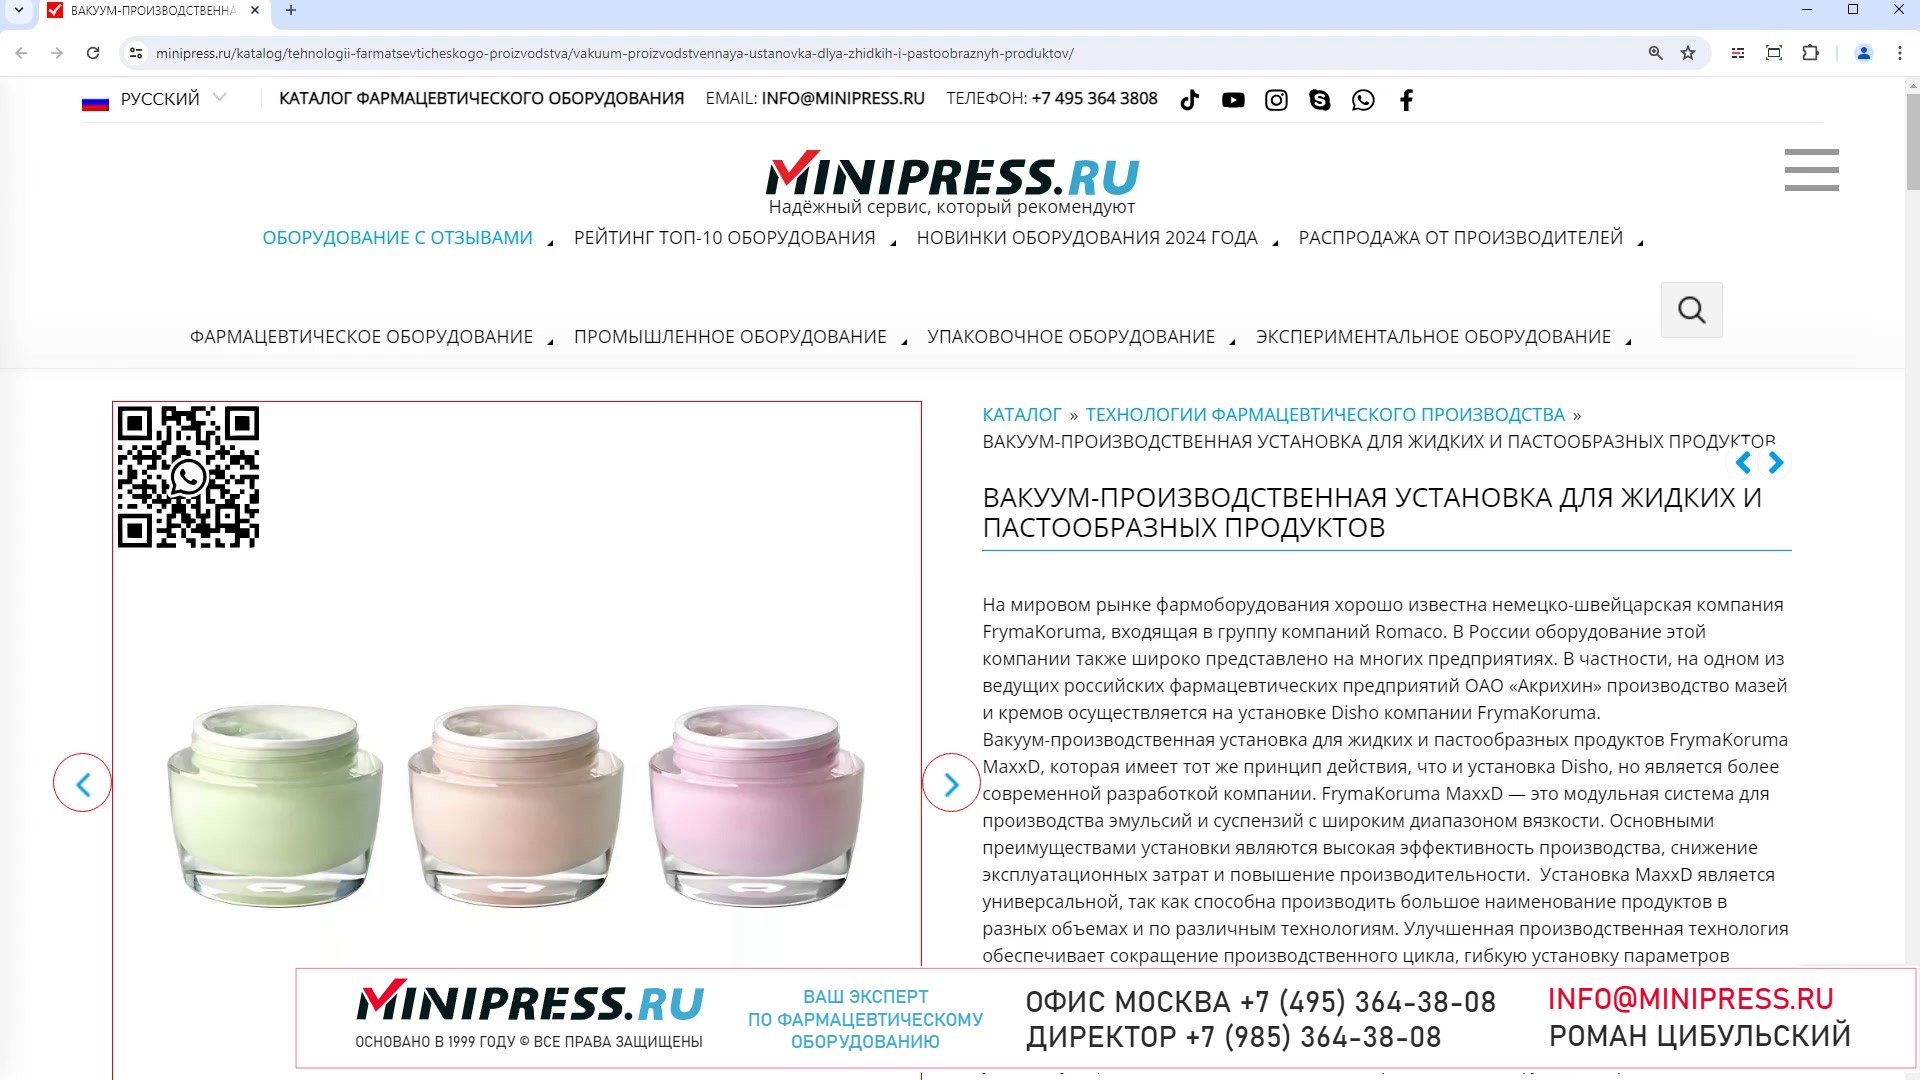 Minipress.ru Вакуум-производственная установка для жидких и пастообразных продуктов